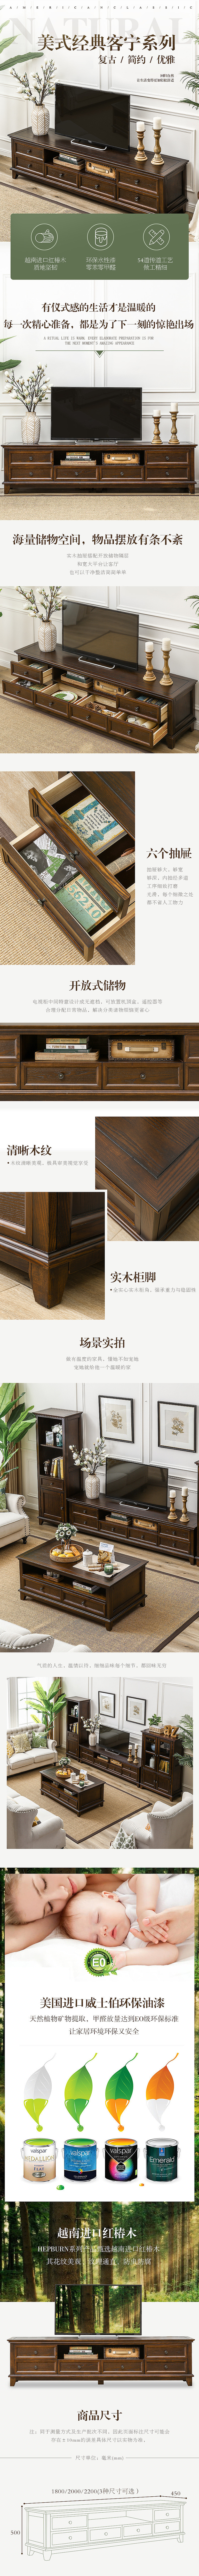 淘宝美工曲奇美式经典木质桌子详情页古典欧式作品